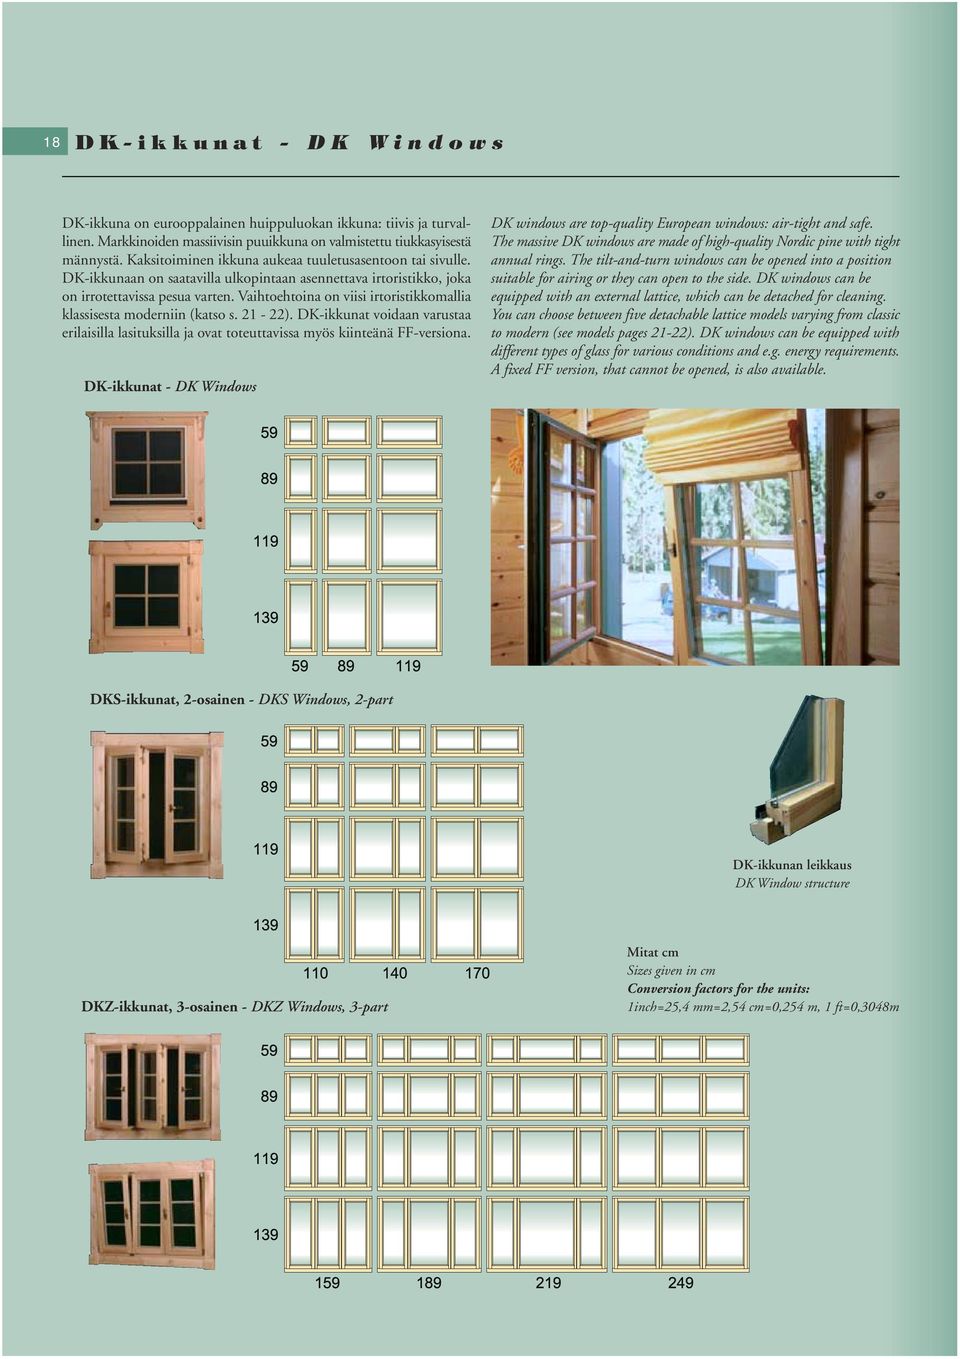 Vaihtoehtoina on viisi irtoristikkomallia klassisesta moderniin (katso s. 21-22). DK-ikkunat voidaan varustaa erilaisilla lasituksilla ja ovat toteuttavissa myös kiinteänä FF-versiona.